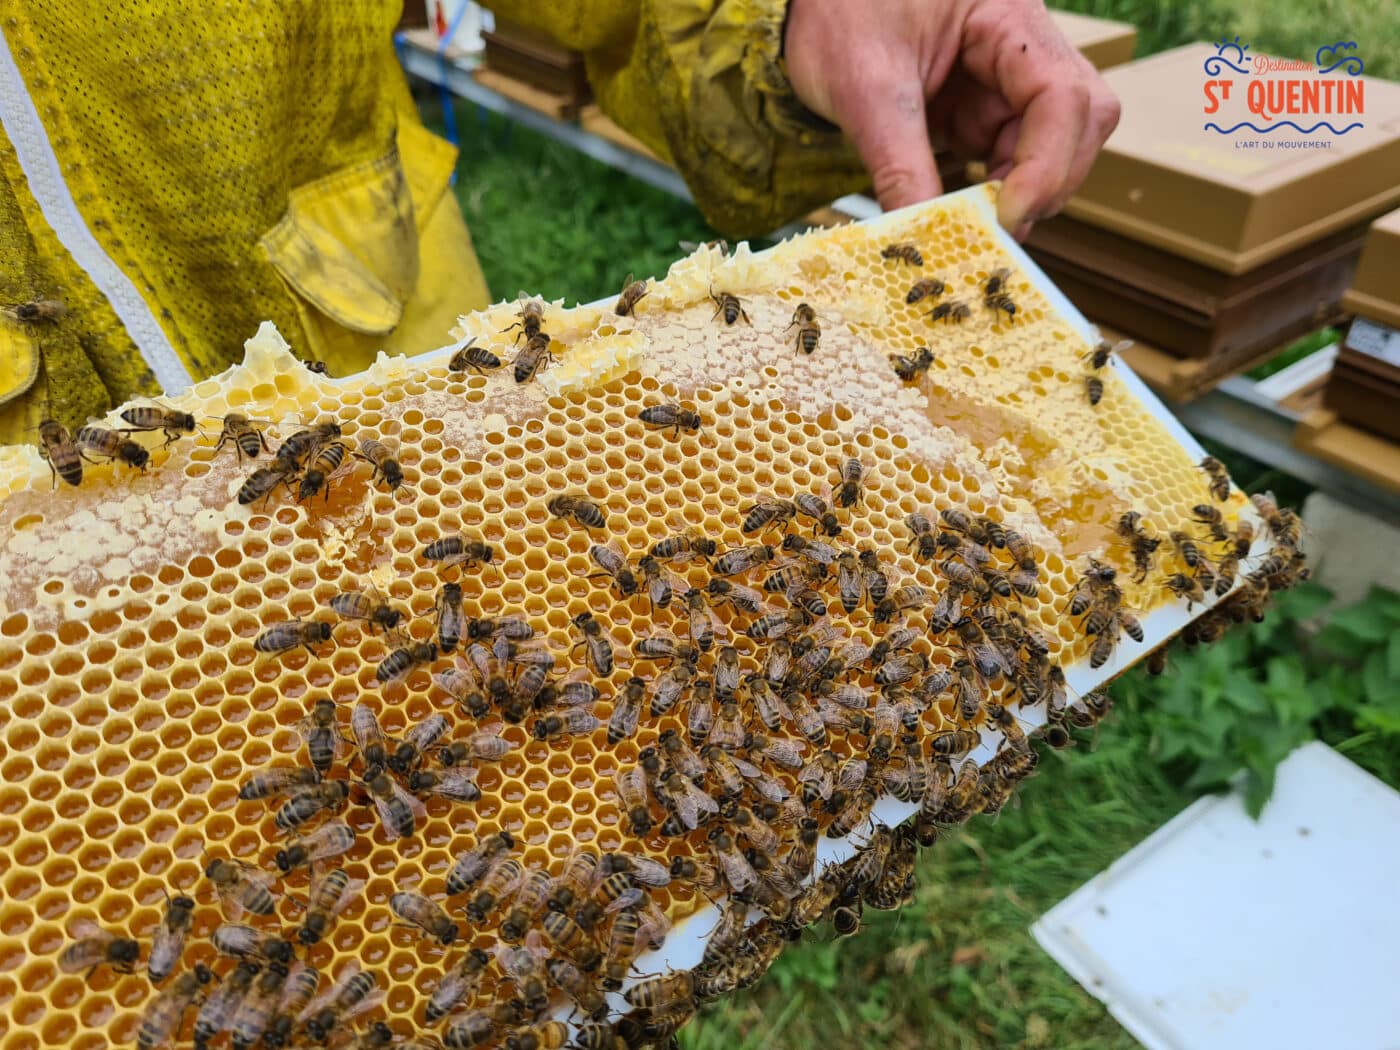 ambassadeur les abeilles de francilly 19 - Office de tourisme du Saint-Quentinois